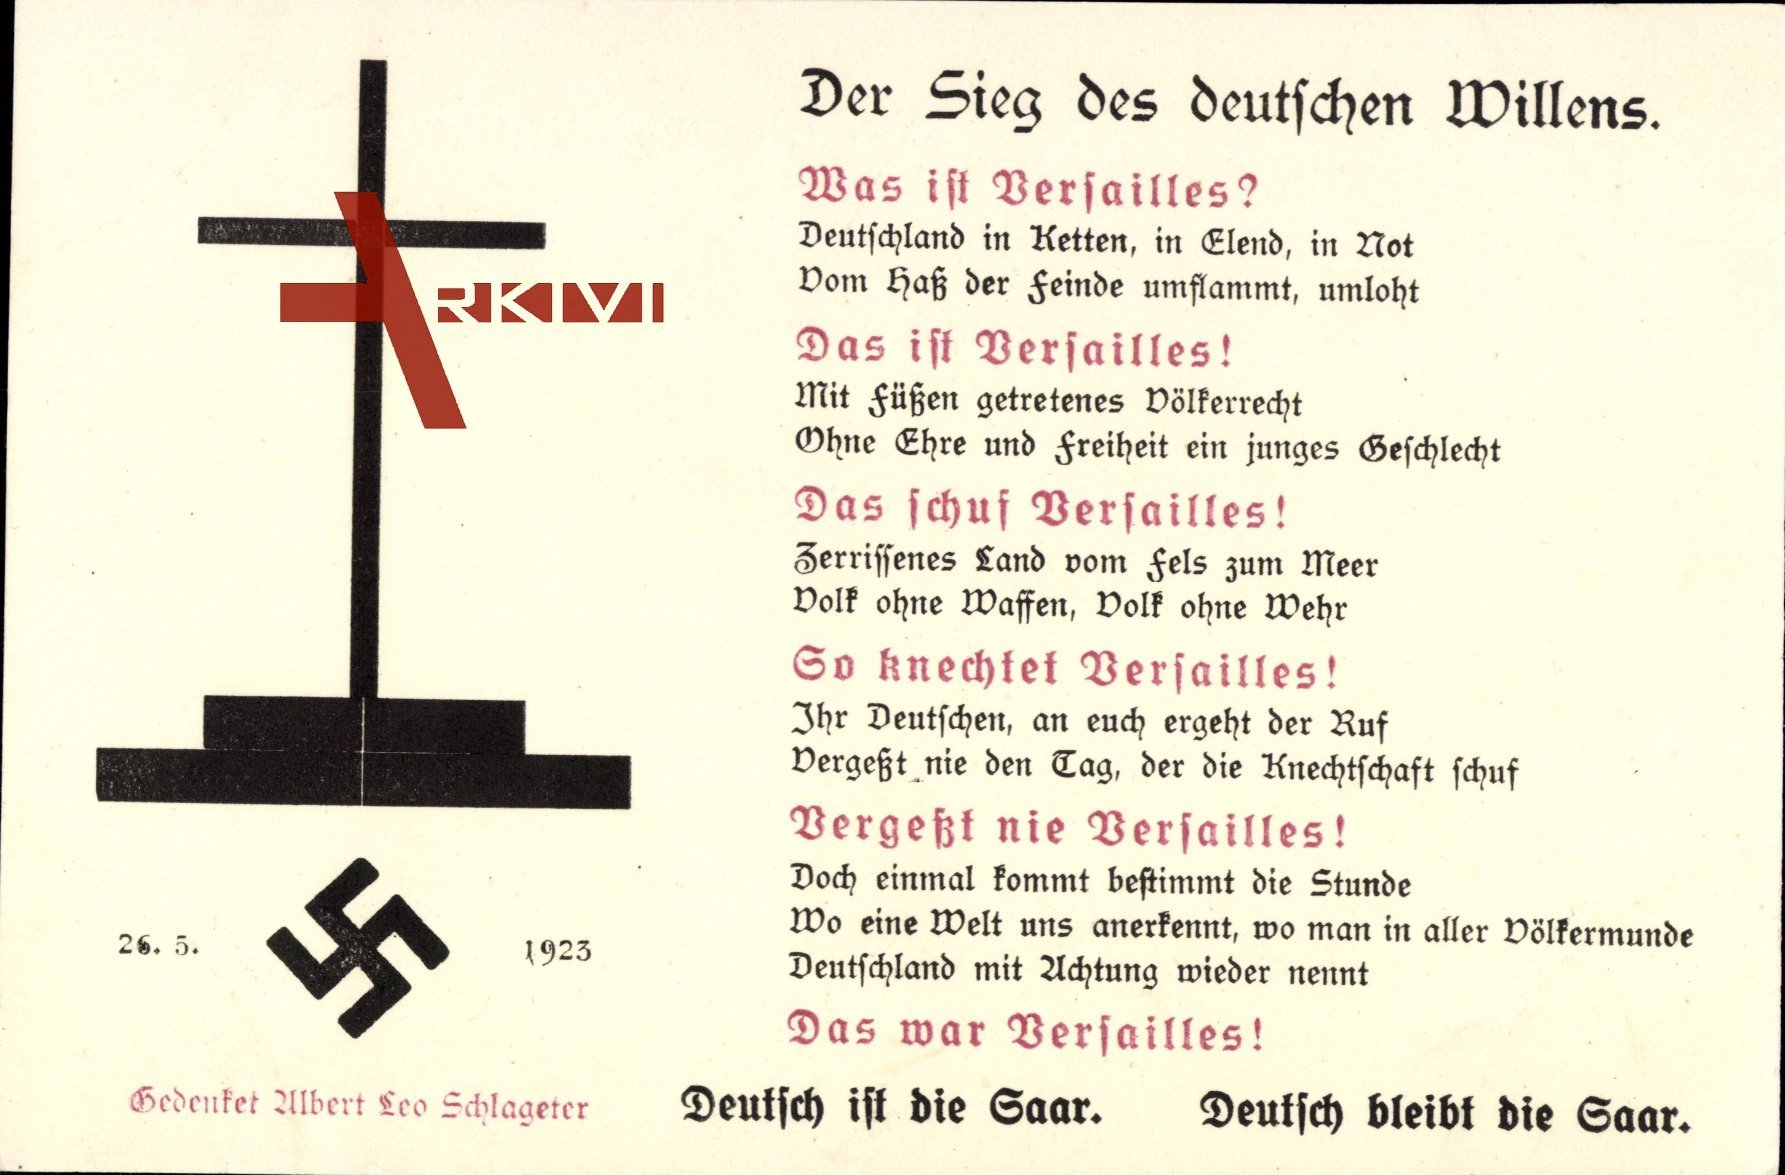 Der Sieg des deutschen Willens, Saarabstimmung 1935, Leo Schlageter